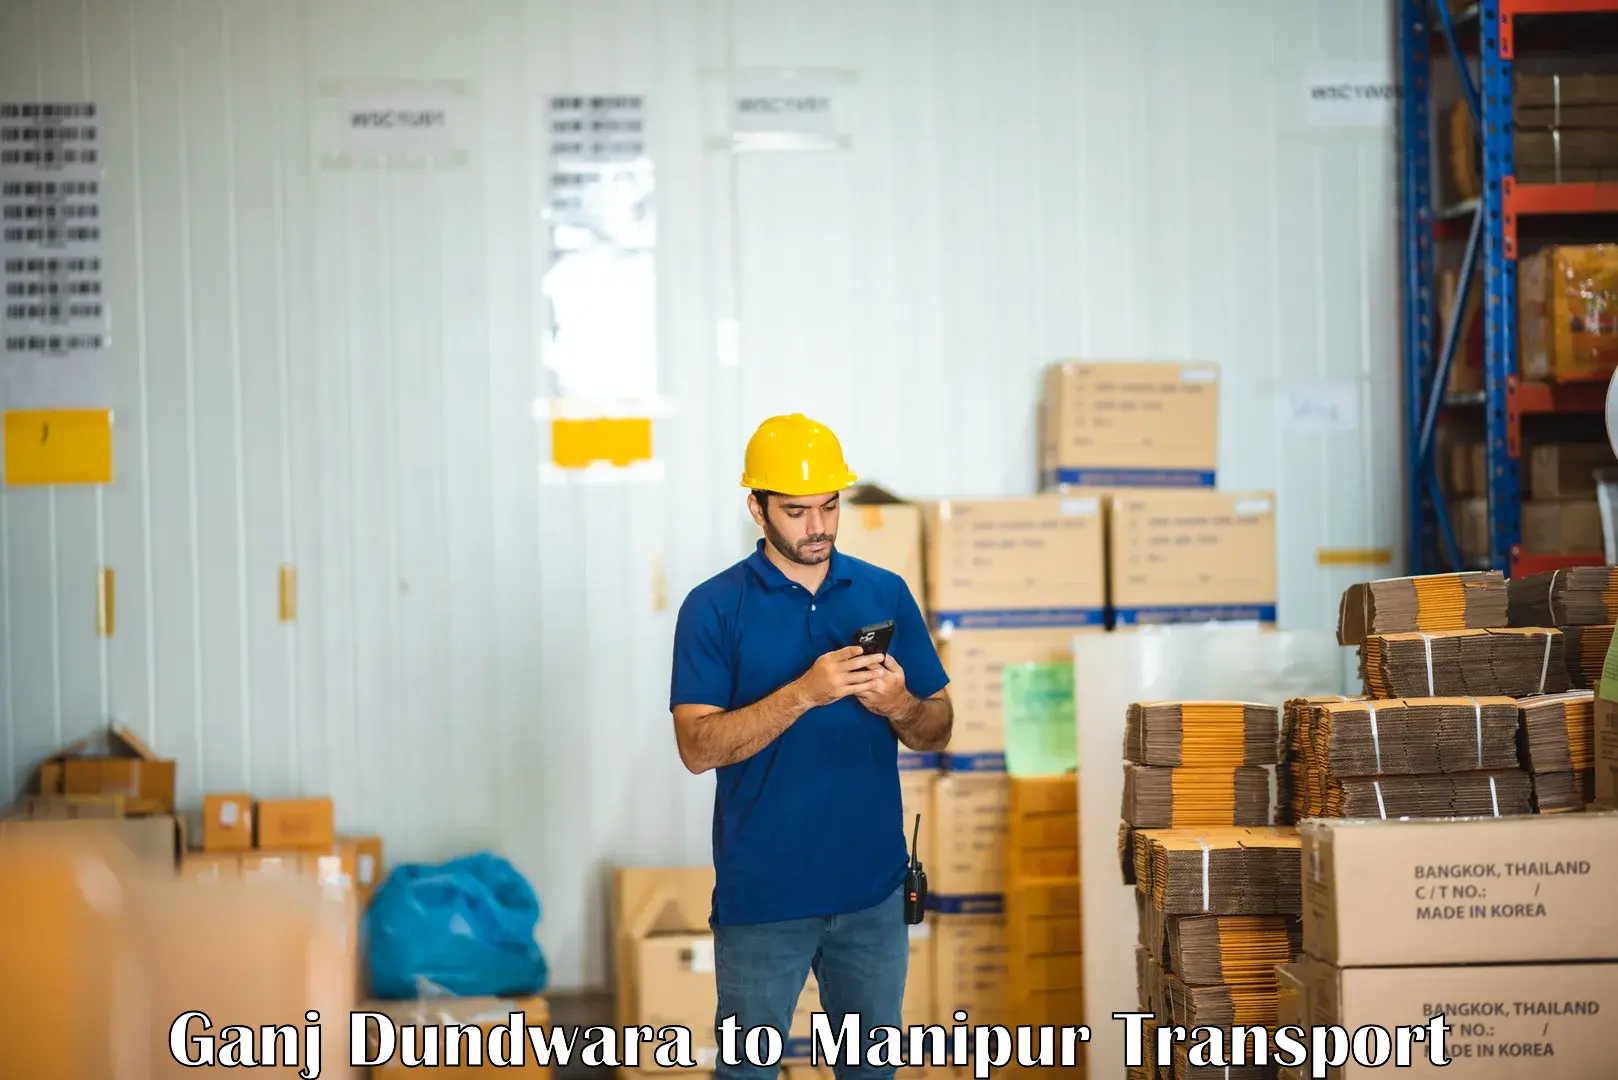 Commercial transport service Ganj Dundwara to NIT Manipur